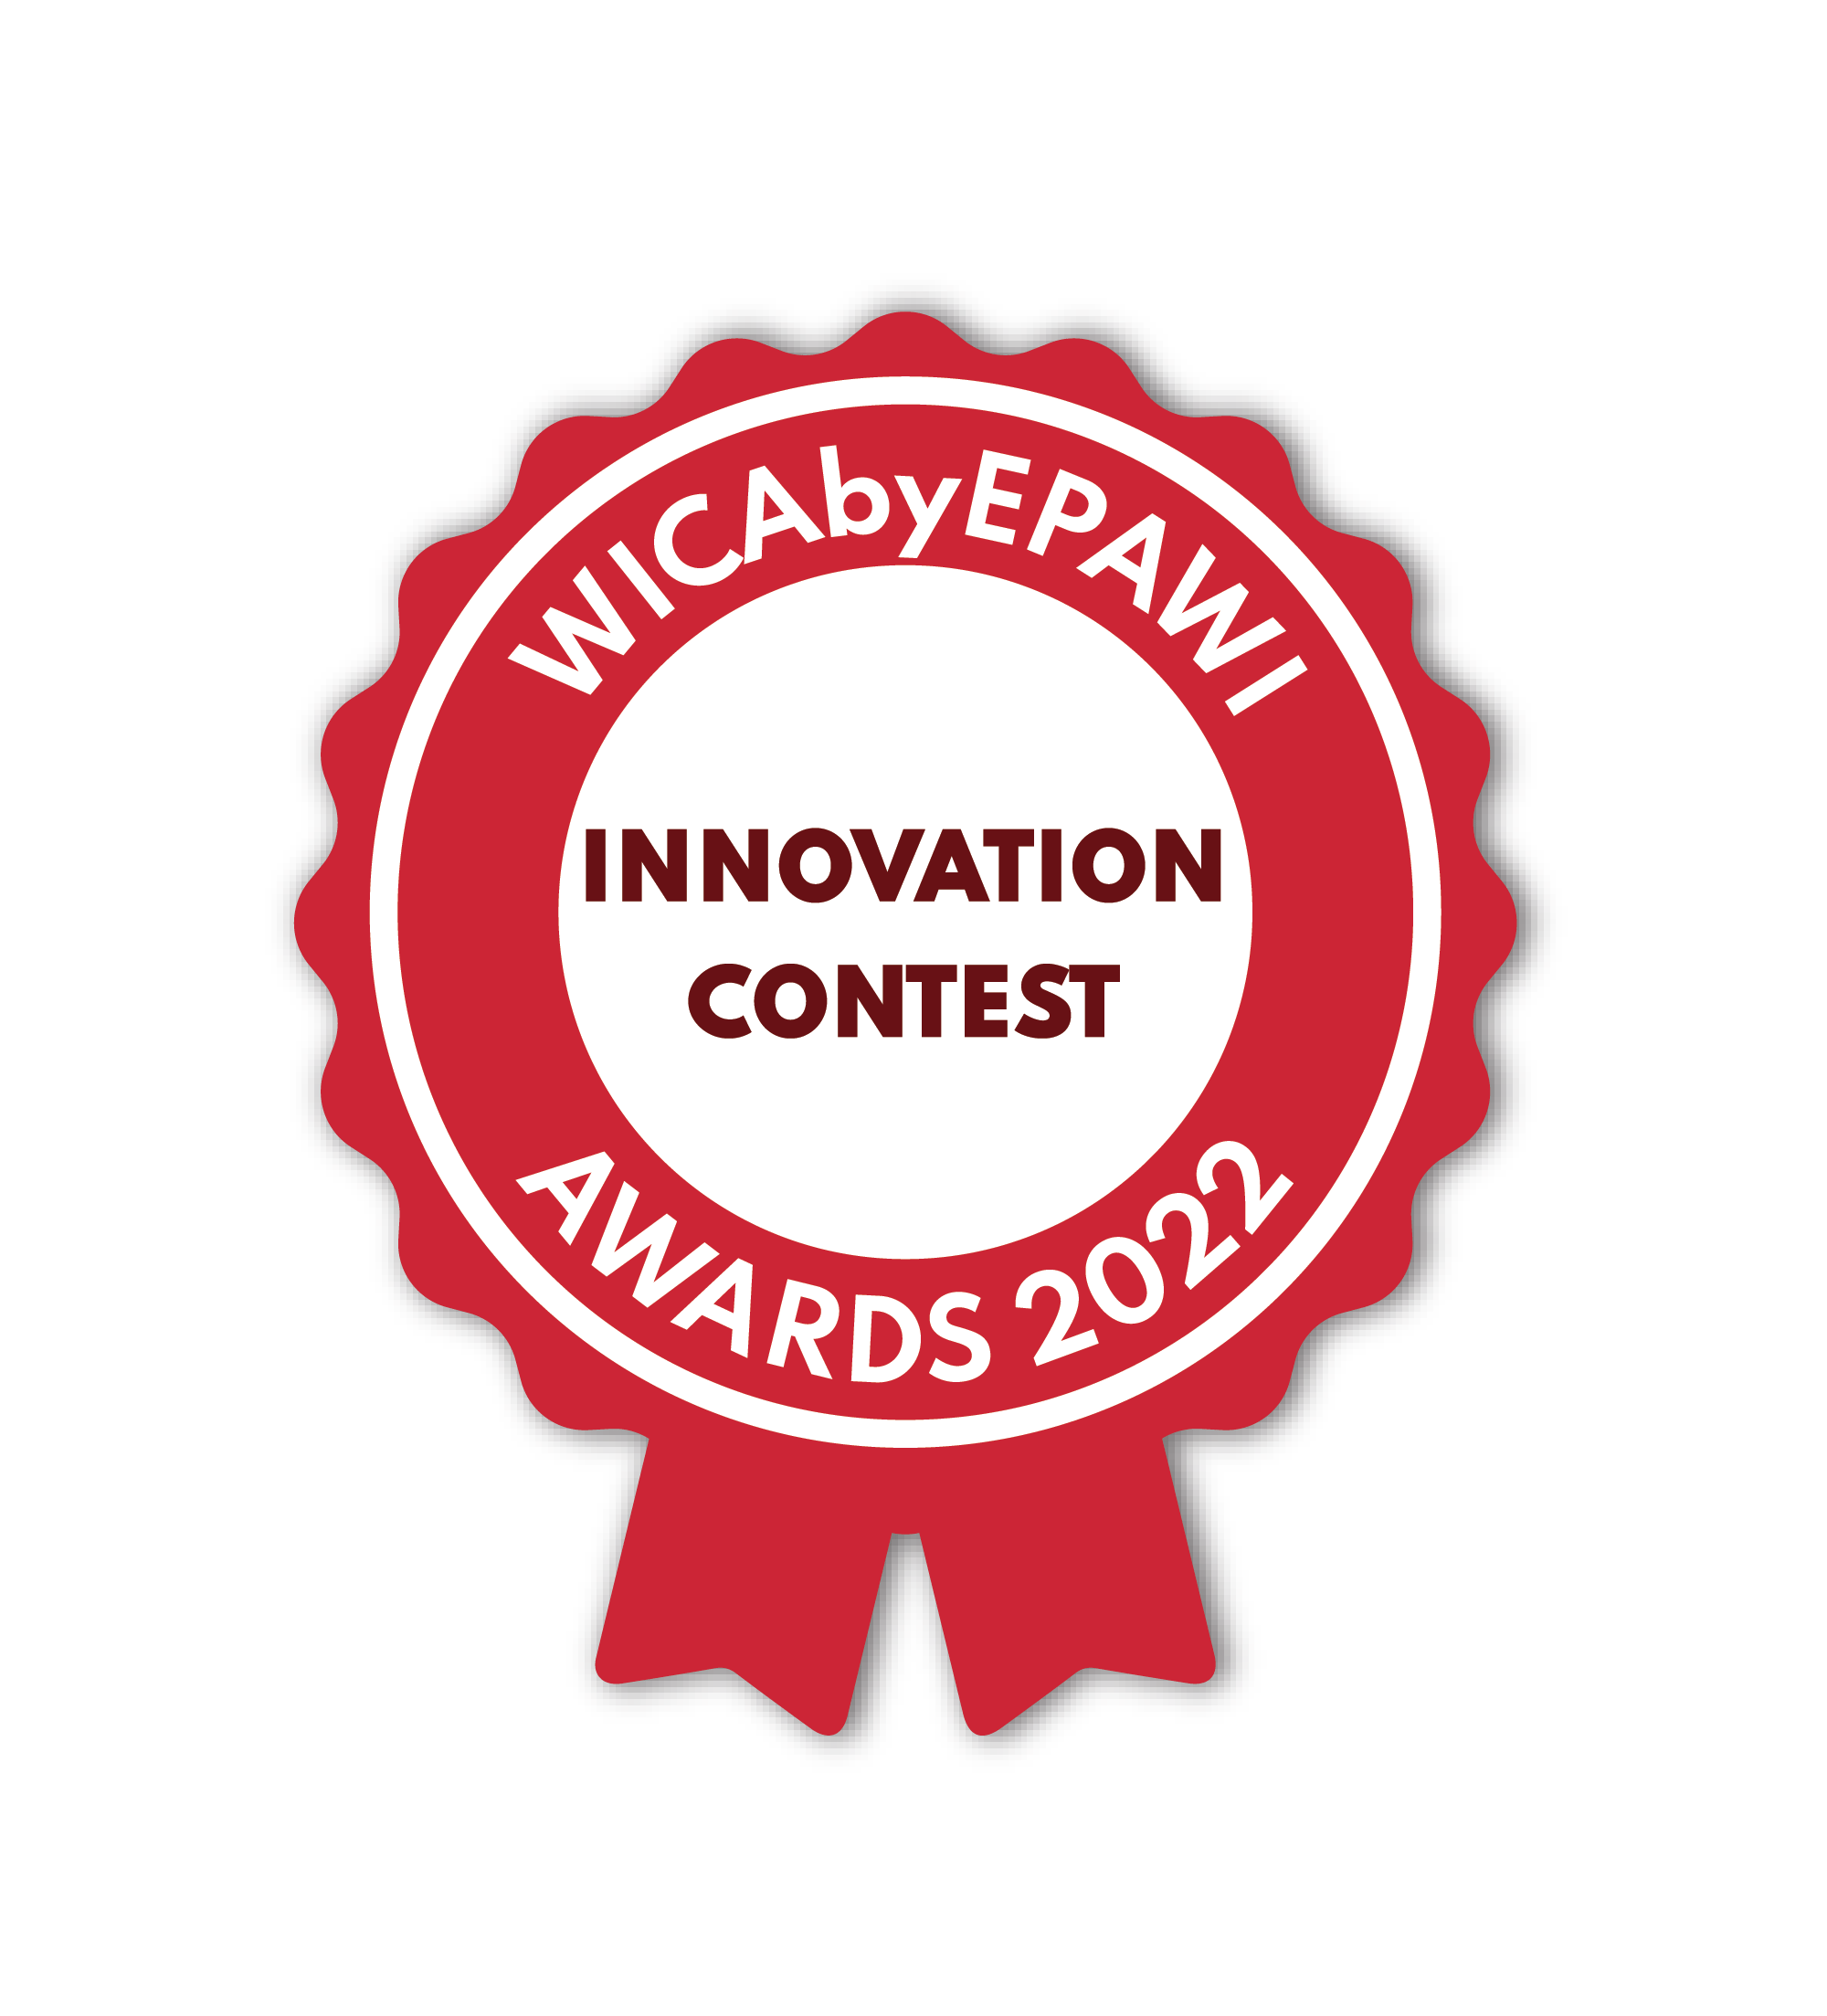 WINEGRID Innovation Contest Award - WICAbyEPAWY 2022